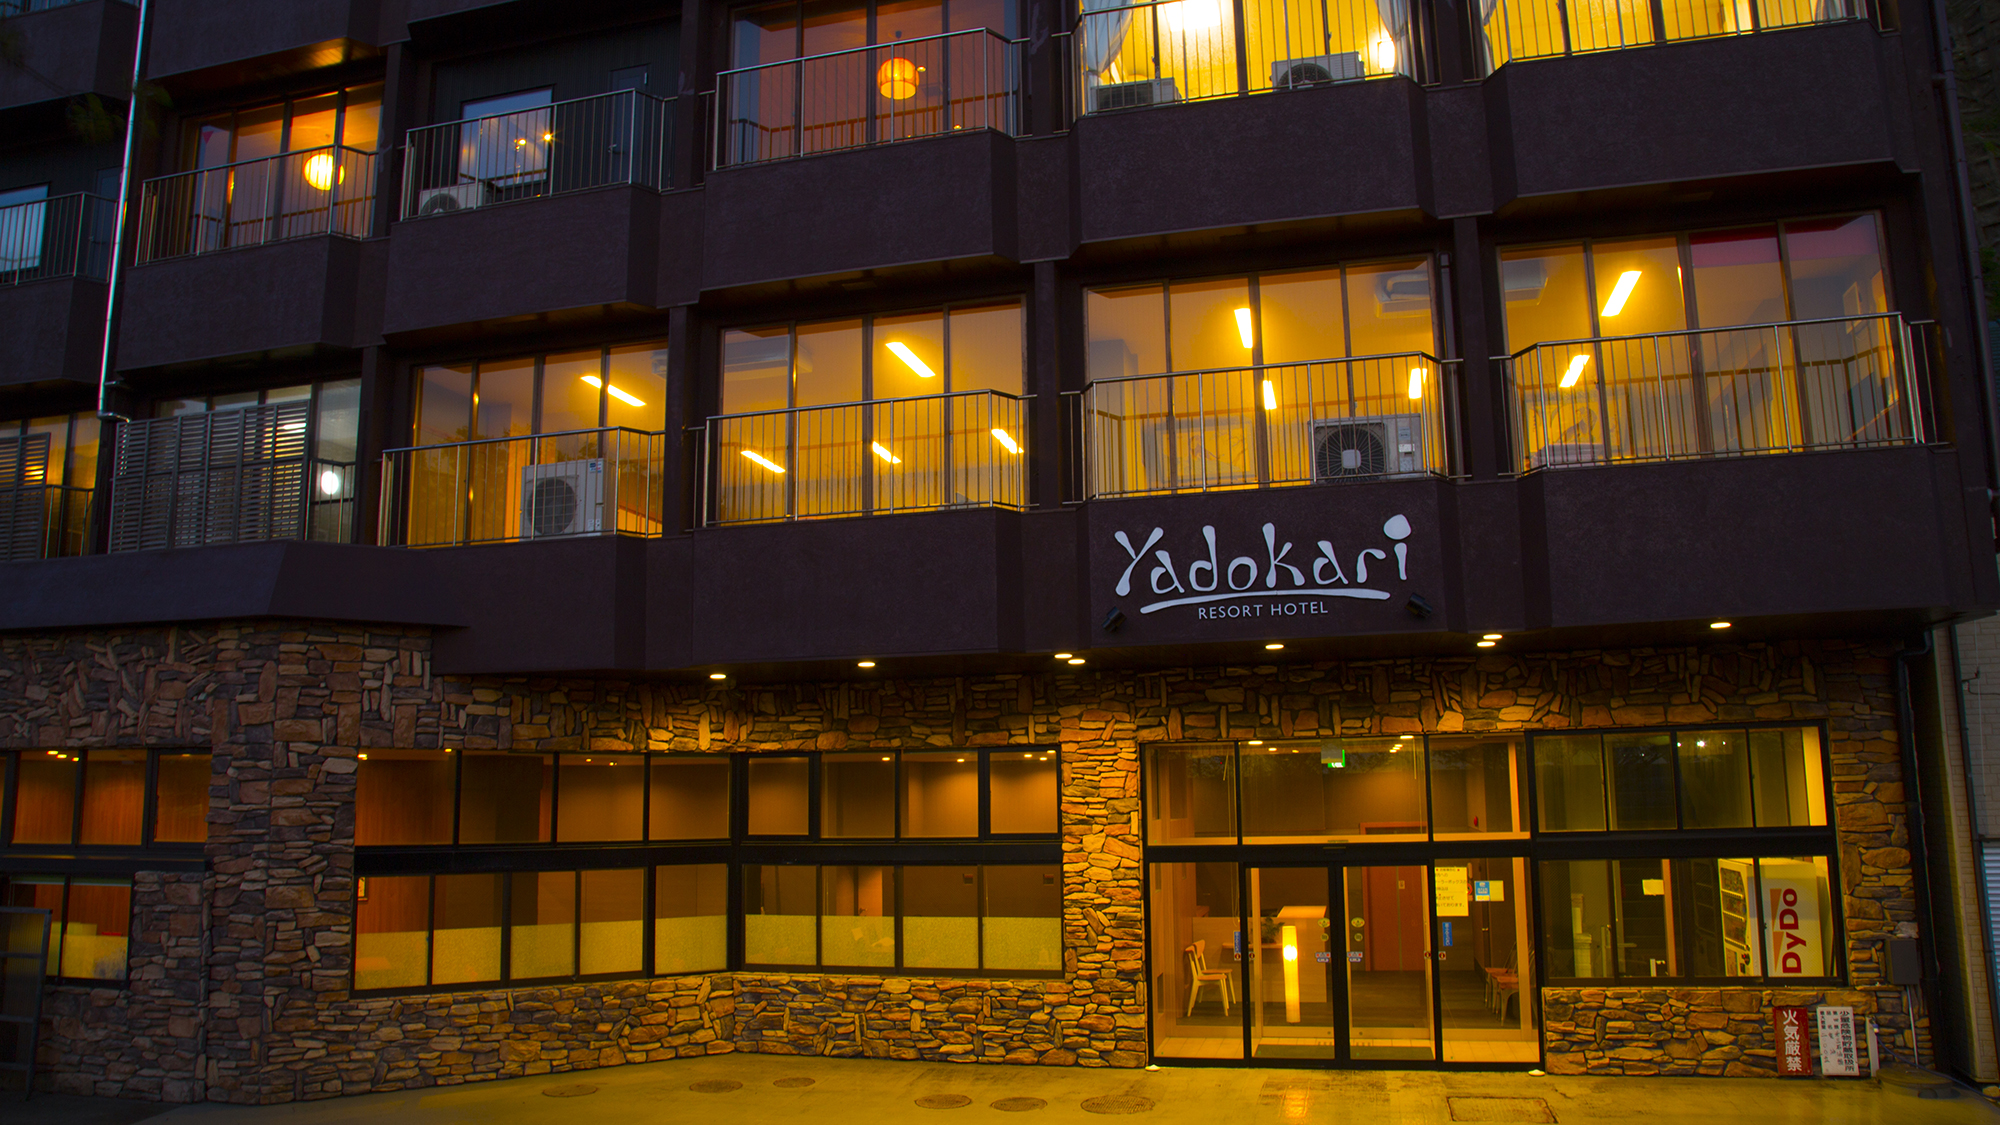 Resort Ryokan Yadokari